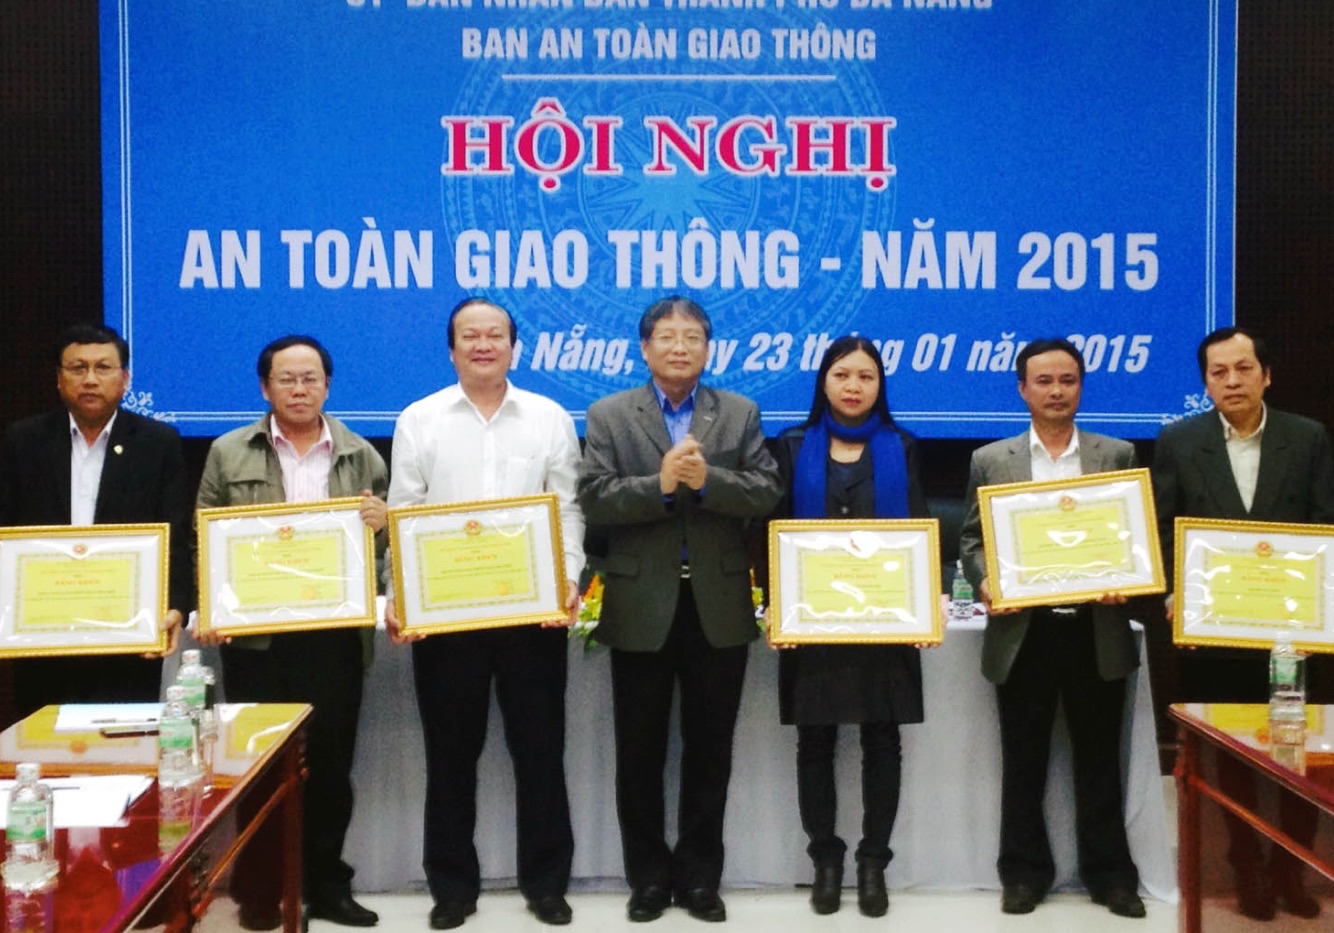 Phó Chủ tịch UBND thành phố Nguyễn Ngọc Tuấn trao Bằng khen của UBND thành phố cho những đơn vị có thành tích xuất sắt trong công tác trật tự àn toàn giao thông năm 2014